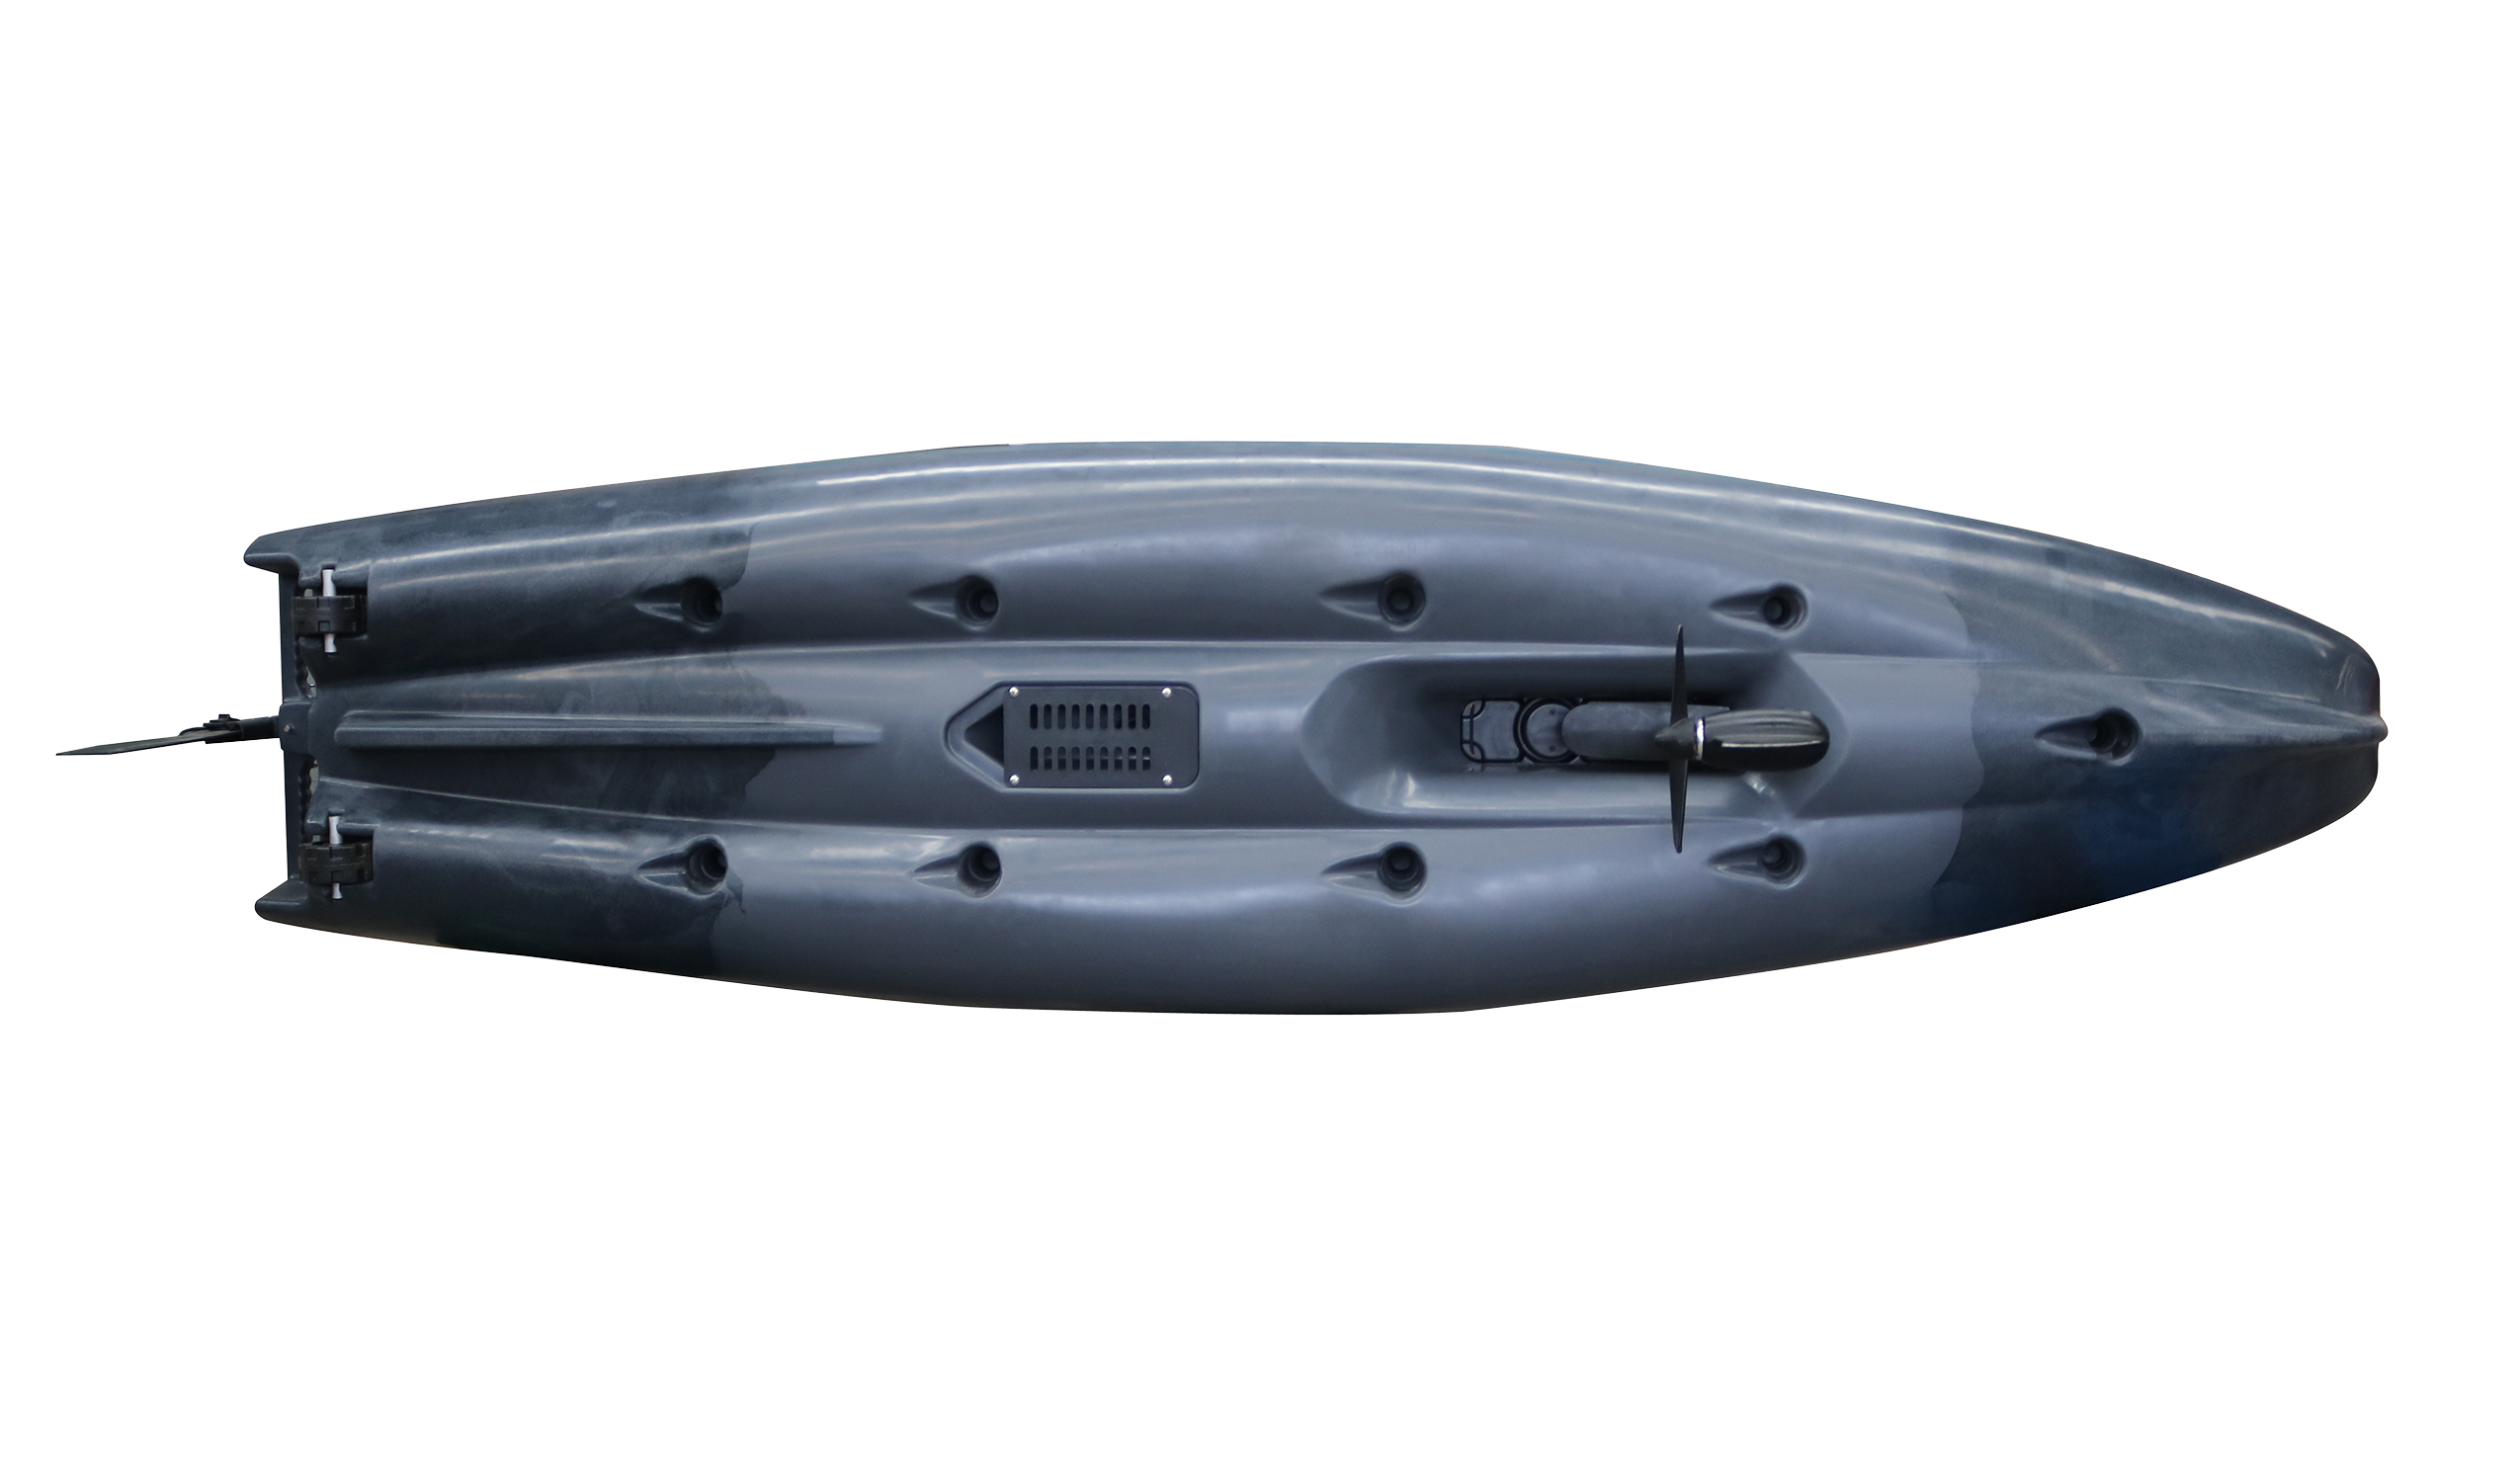 Promozione PD 320-titan: kayak + sedile girevole fino al 10 marzo